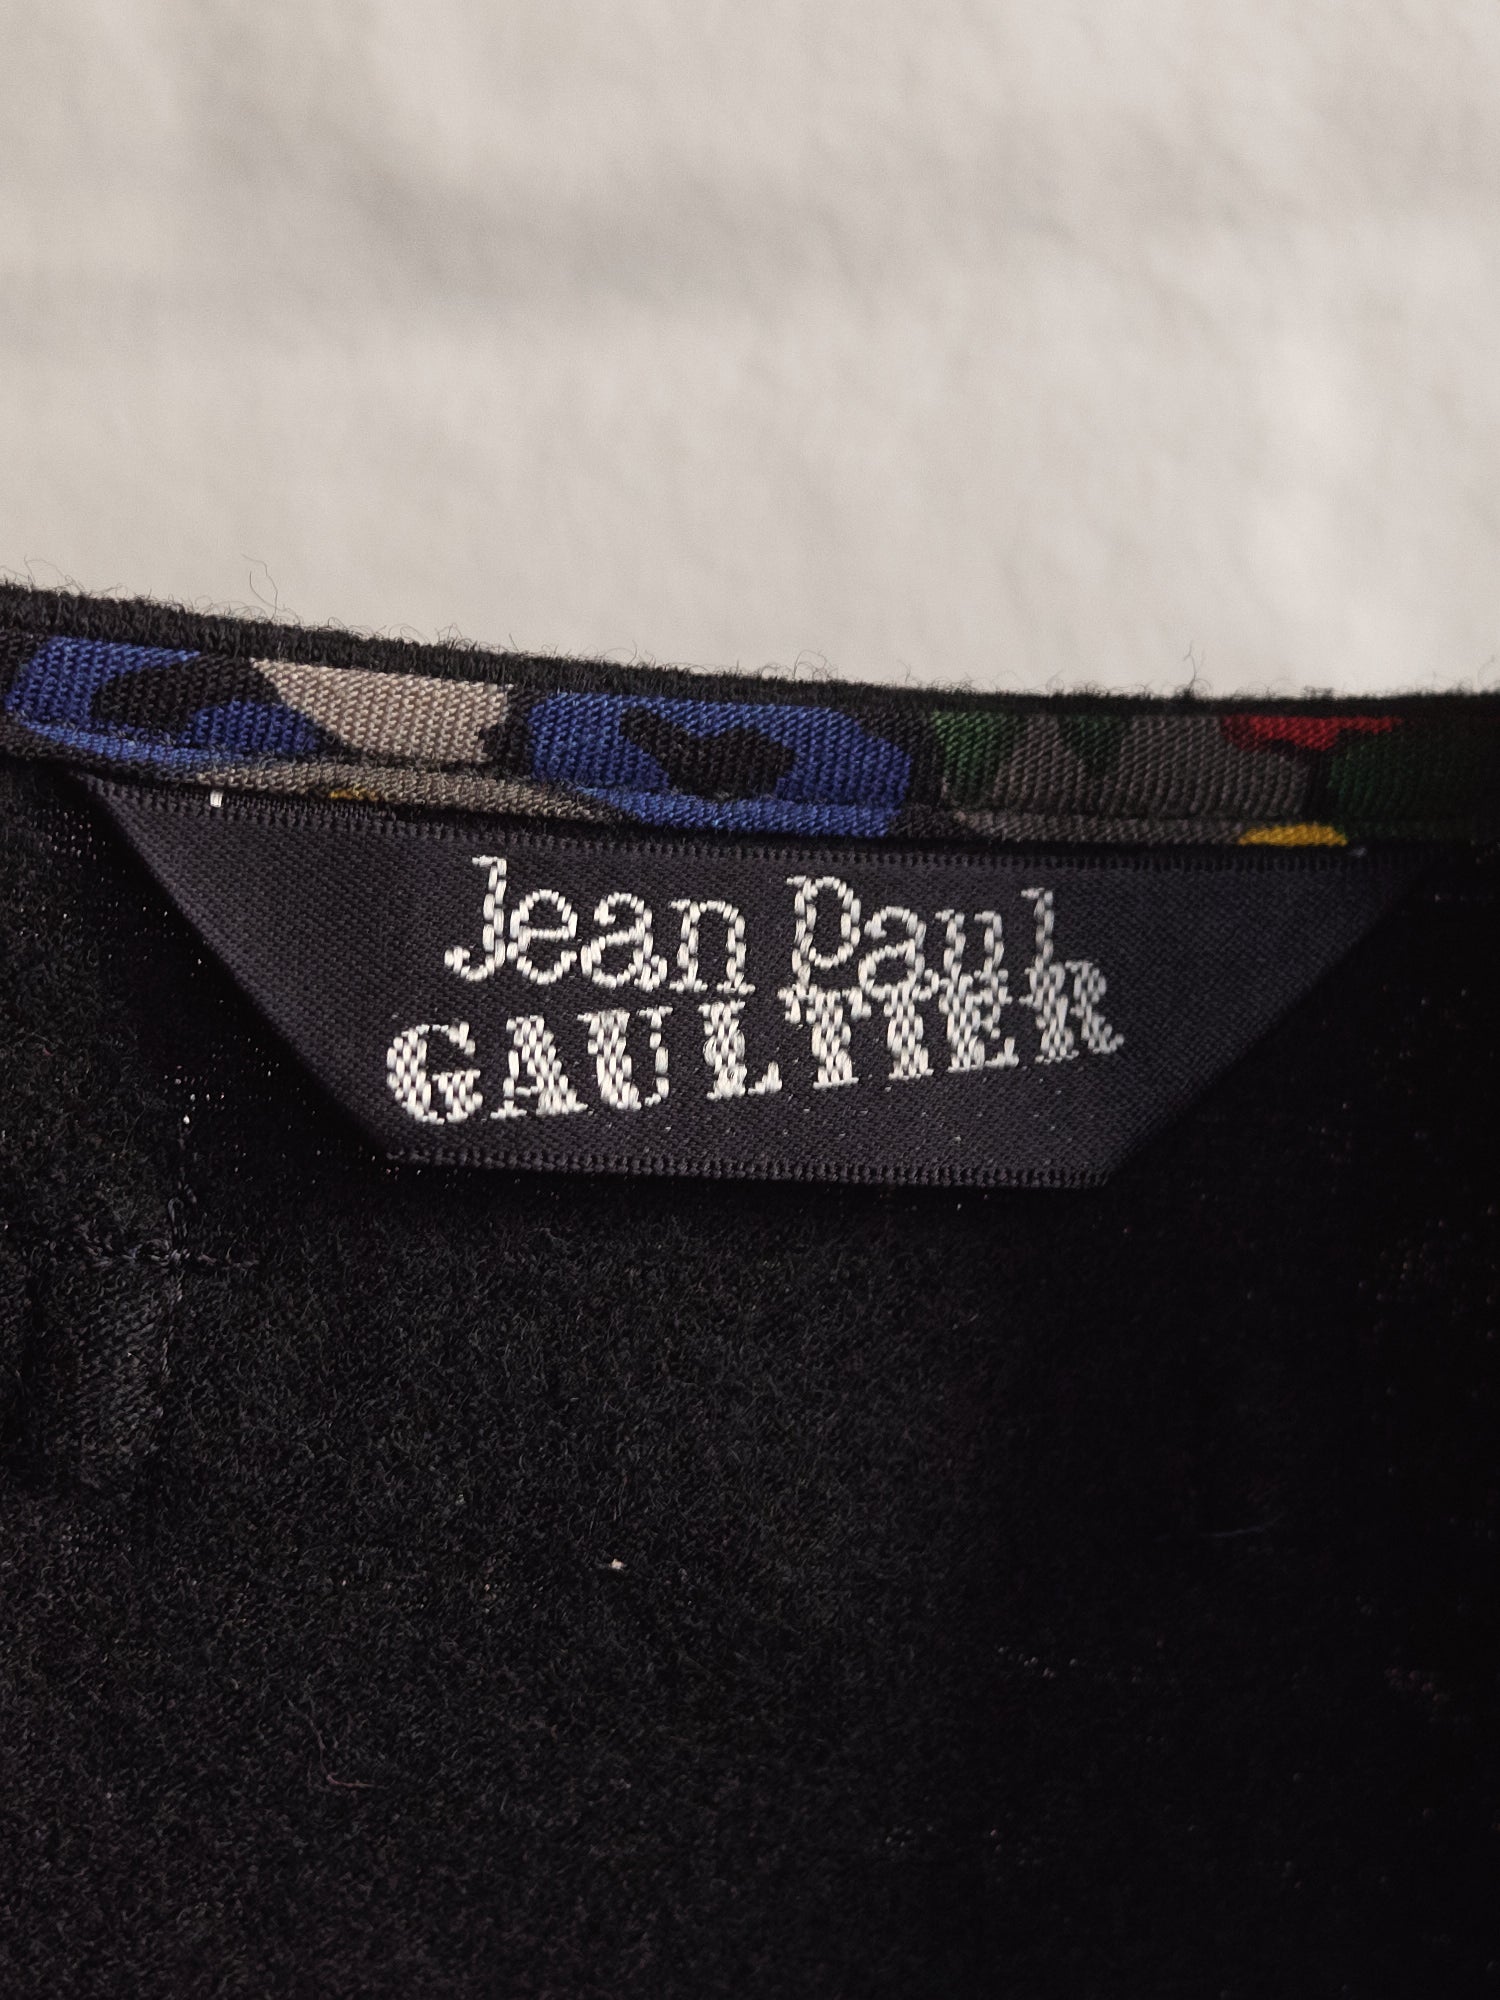 Jean Paul Gaultier 80s-90s multicoloured face print vest skirt set - sz M L